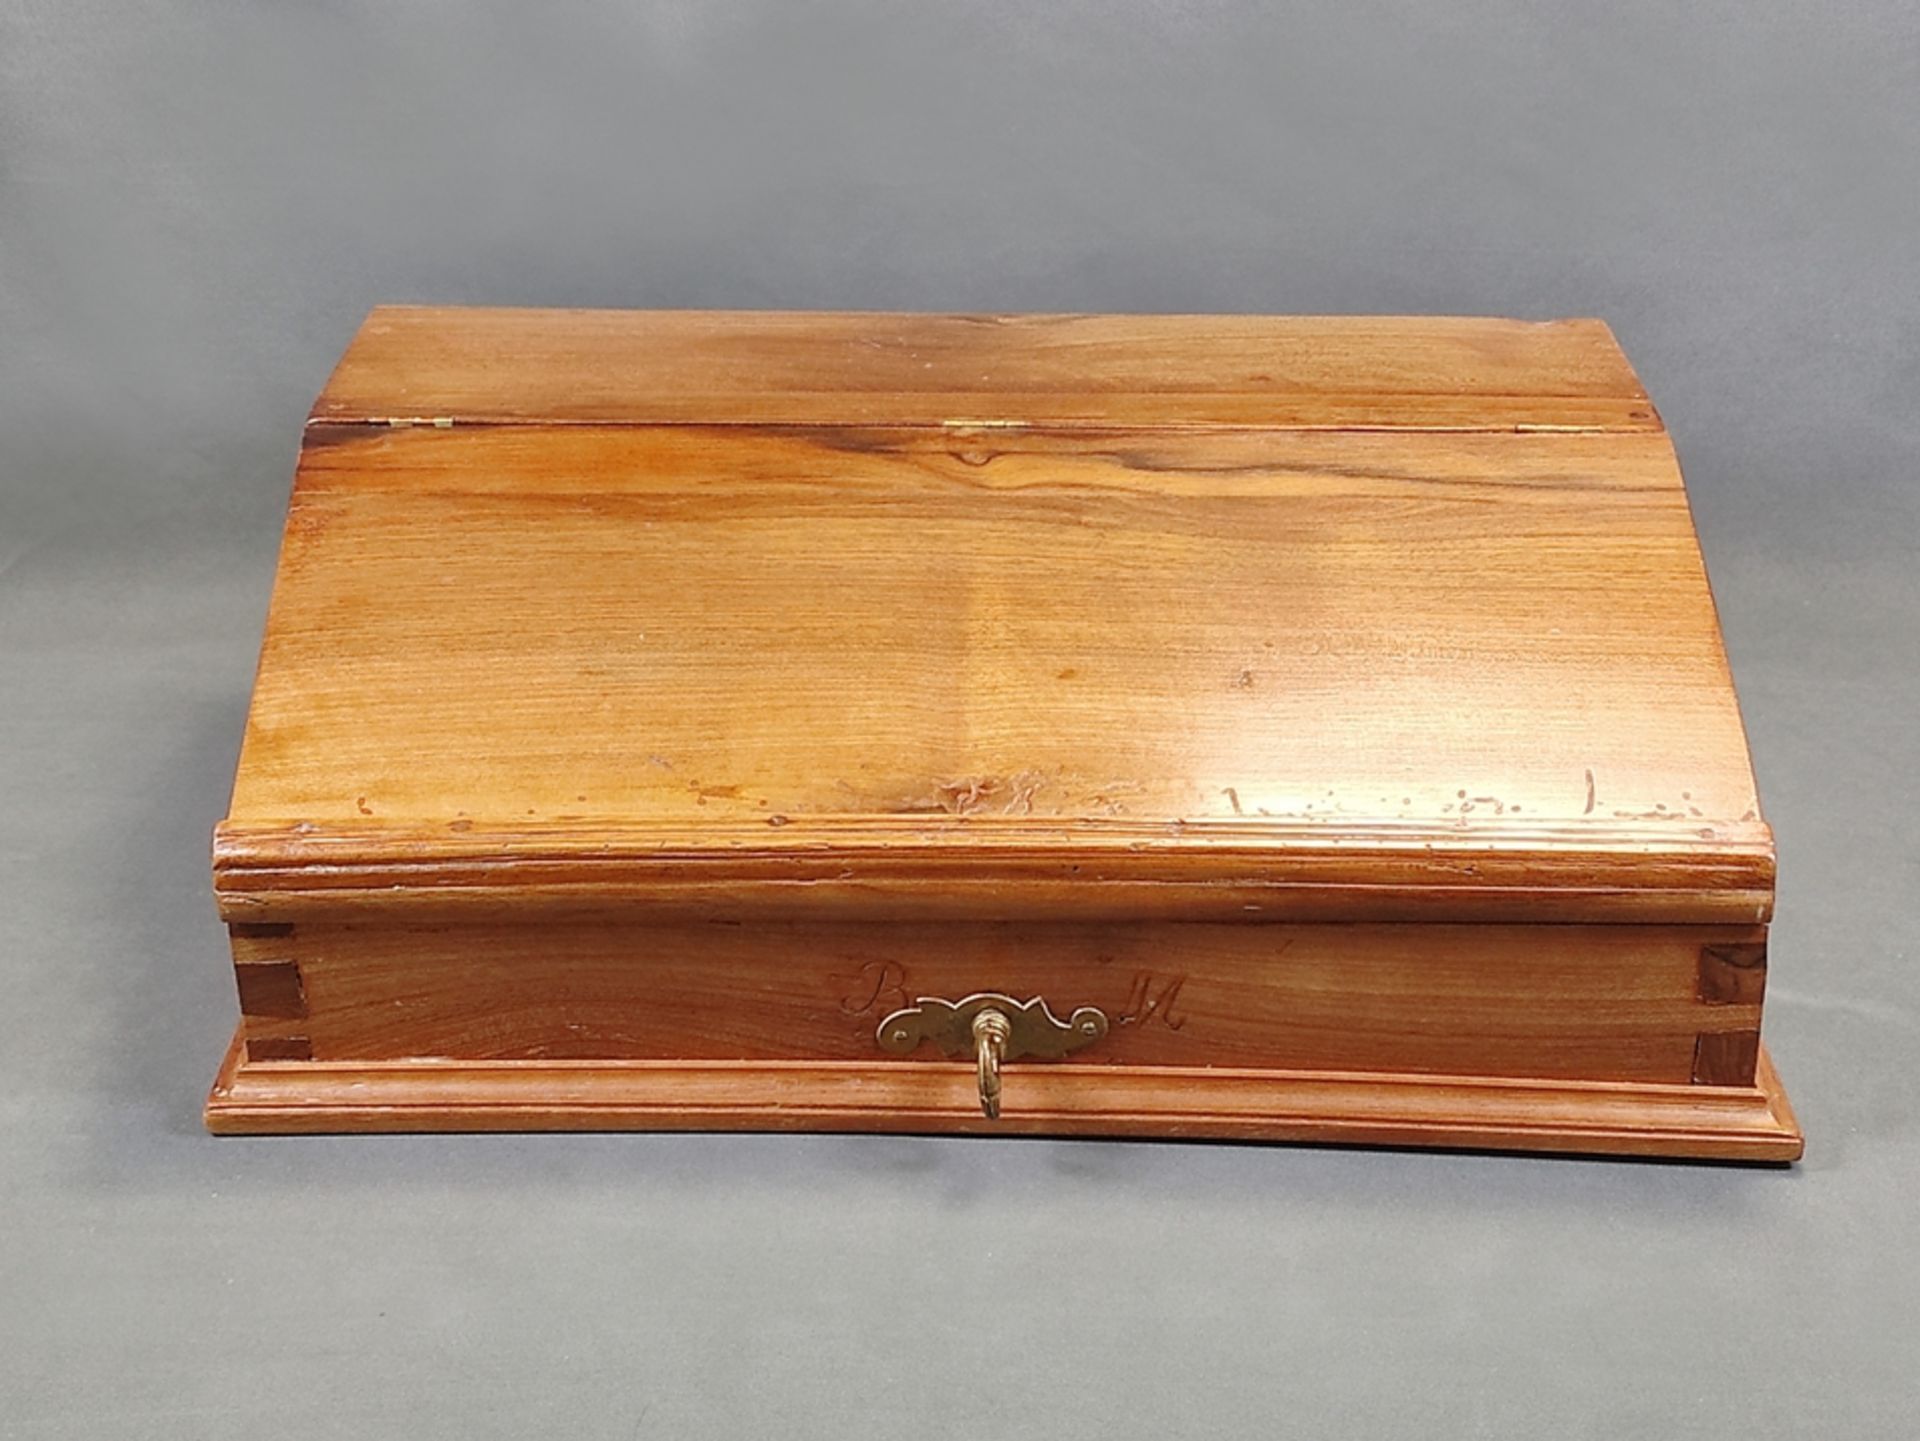 Tisch-Schreibpult/Reiseschreibpult, 19. Jahrhundert, Holz, angeschrägter, scharnierter Deckel als S